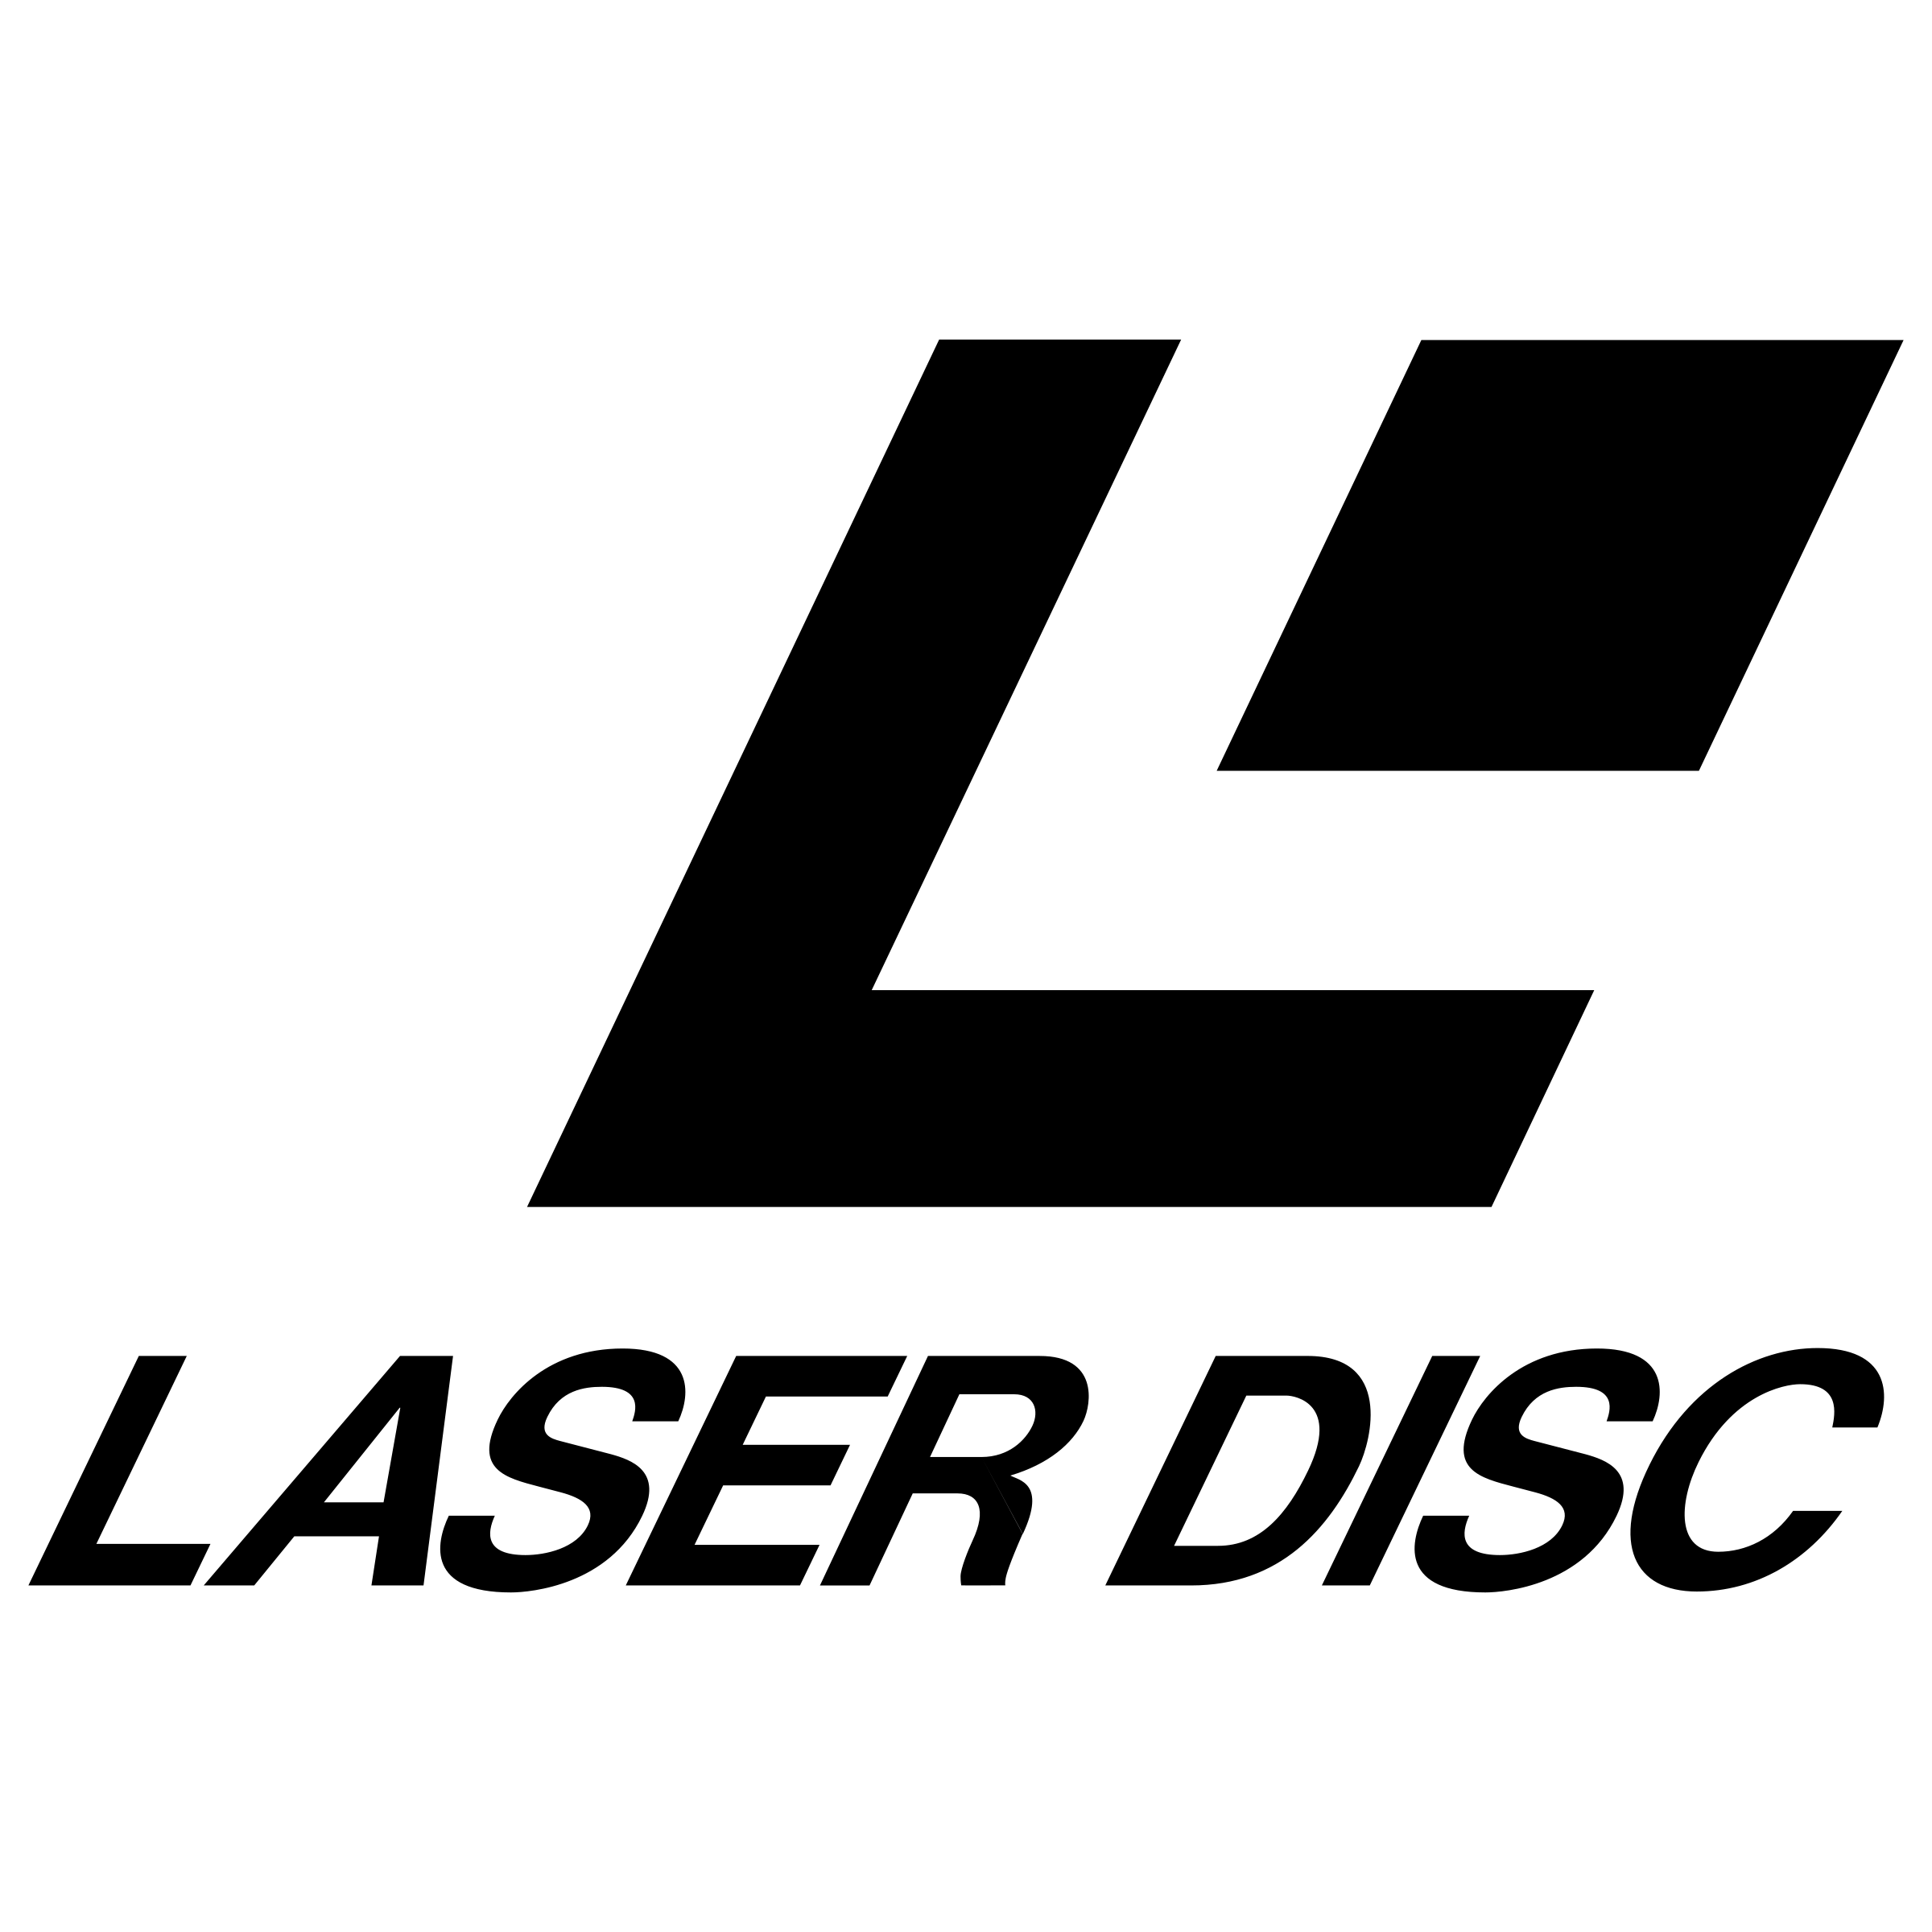 Laserdisc Logo - Laser Disc Logo PNG Transparent & SVG Vector